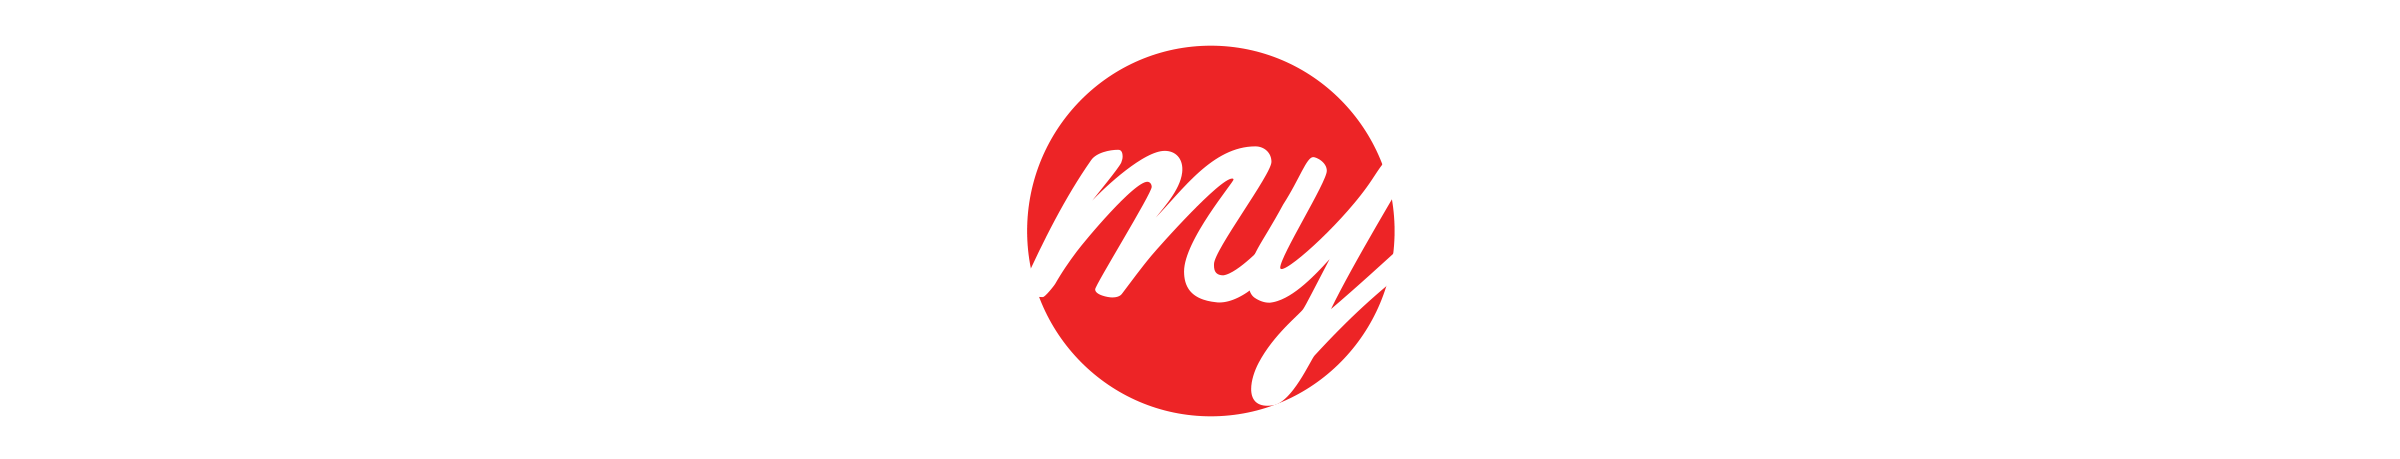 primemybody logo